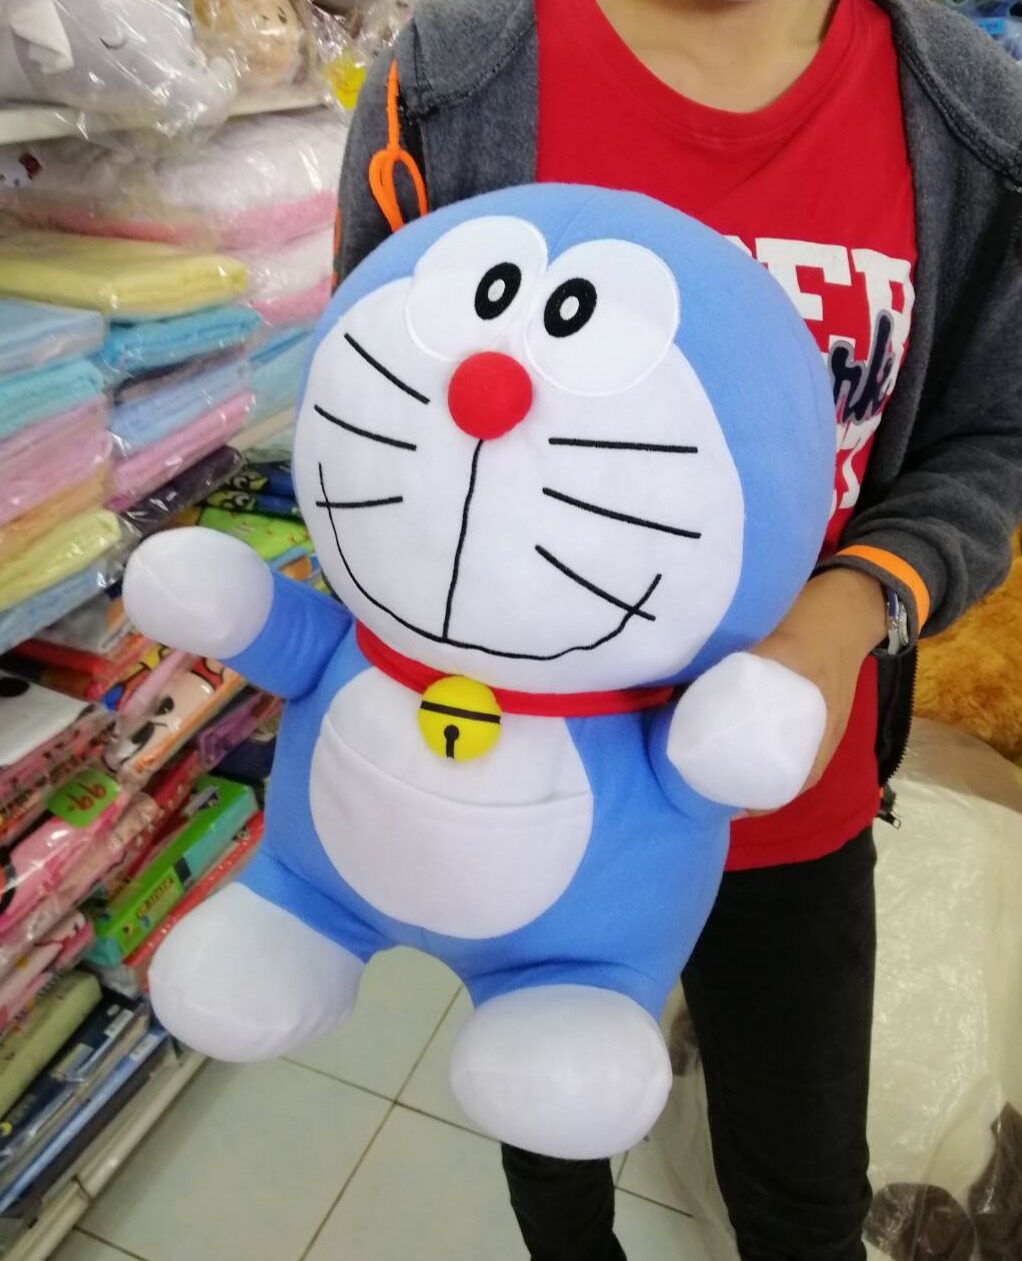 13นิ้วนอนหมอบ(159บ.)   กับ 16นิ้ว ยืน (149บ.)  Doraemon   โดราเอม่อน   ตุ๊กตาโดราเอม่อน   โดราเอม่อนแท้    โดราเอม่อน   โดเรม่อน   Doraemon   ตุ๊กตาโดราเอมอน